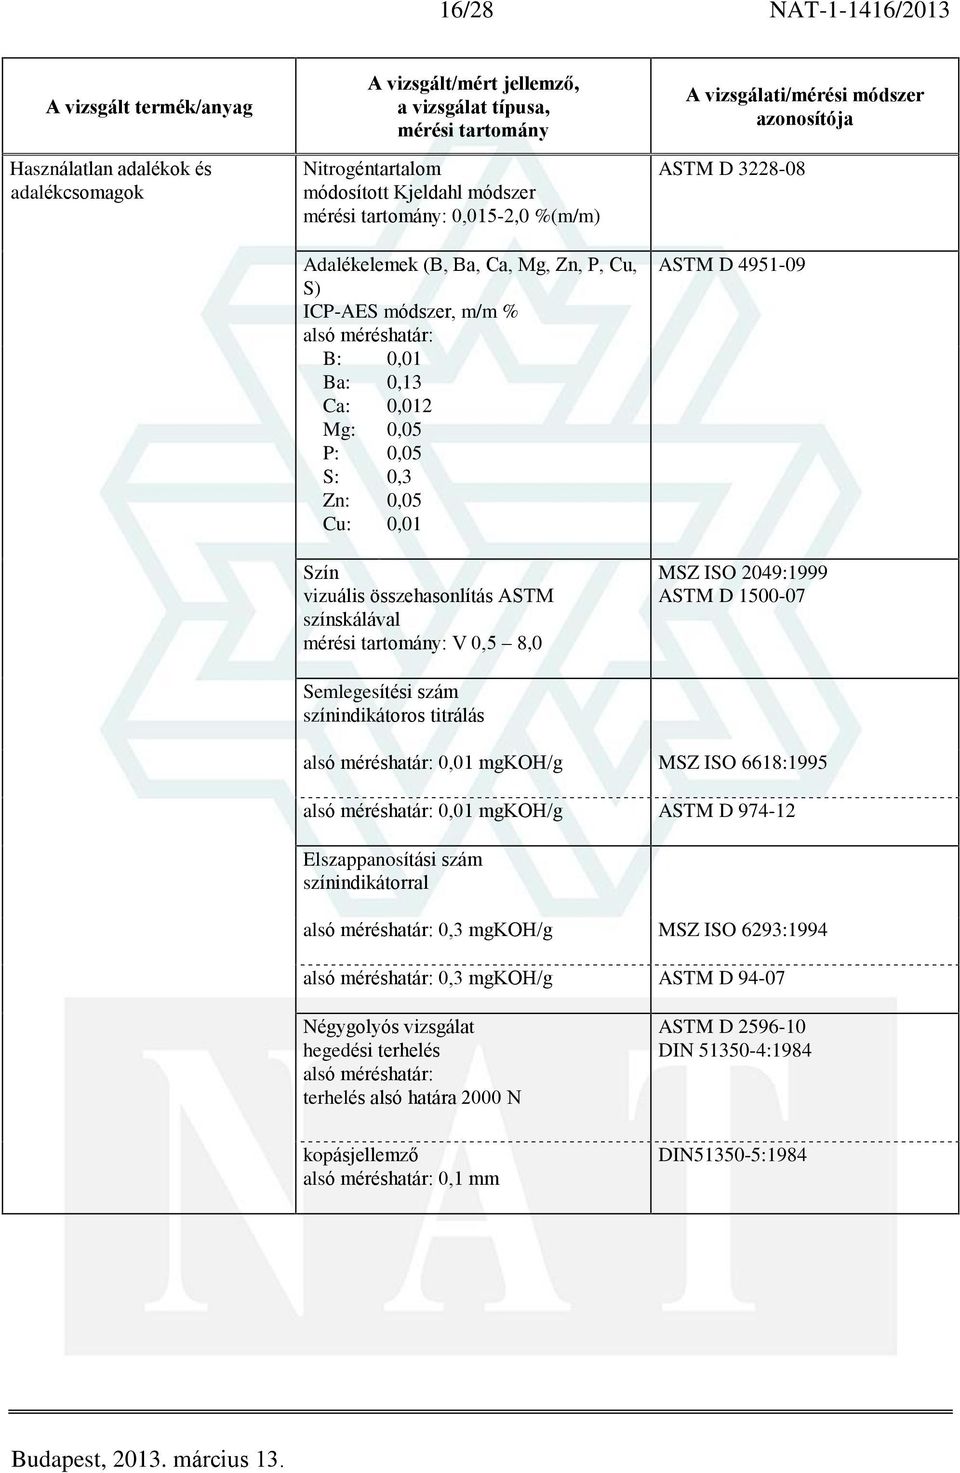 ASTM D 4951-09 MSZ ISO 2049:1999 ASTM D 1500-07 alsó méréshatár: 0,01 mgkoh/g MSZ ISO 6618:1995 alsó méréshatár: 0,01 mgkoh/g ASTM D 974-12 Elszappanosítási szám színindikátorral alsó méréshatár: 0,3